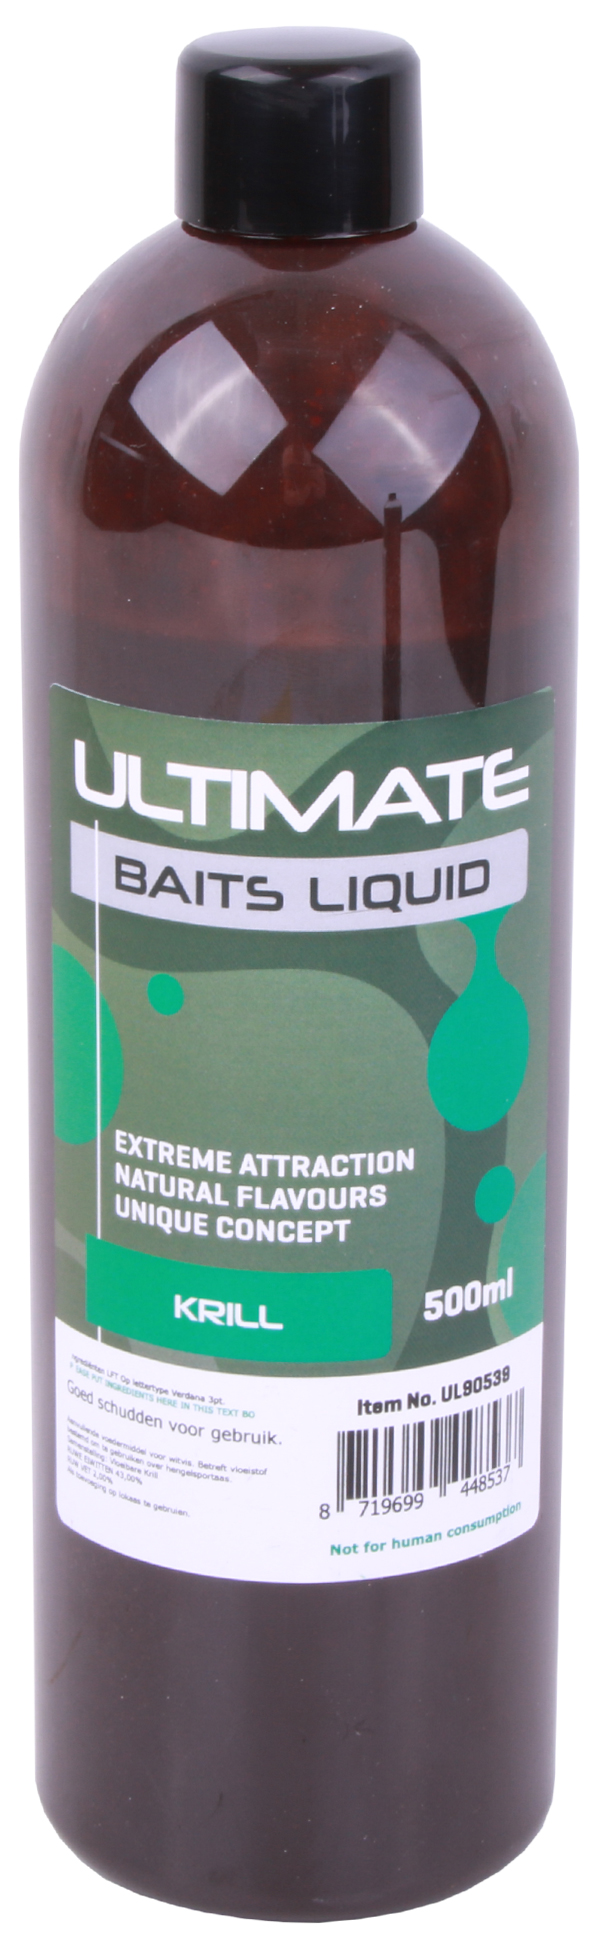 Ultimate Baits Liquid 500 ml - Krill